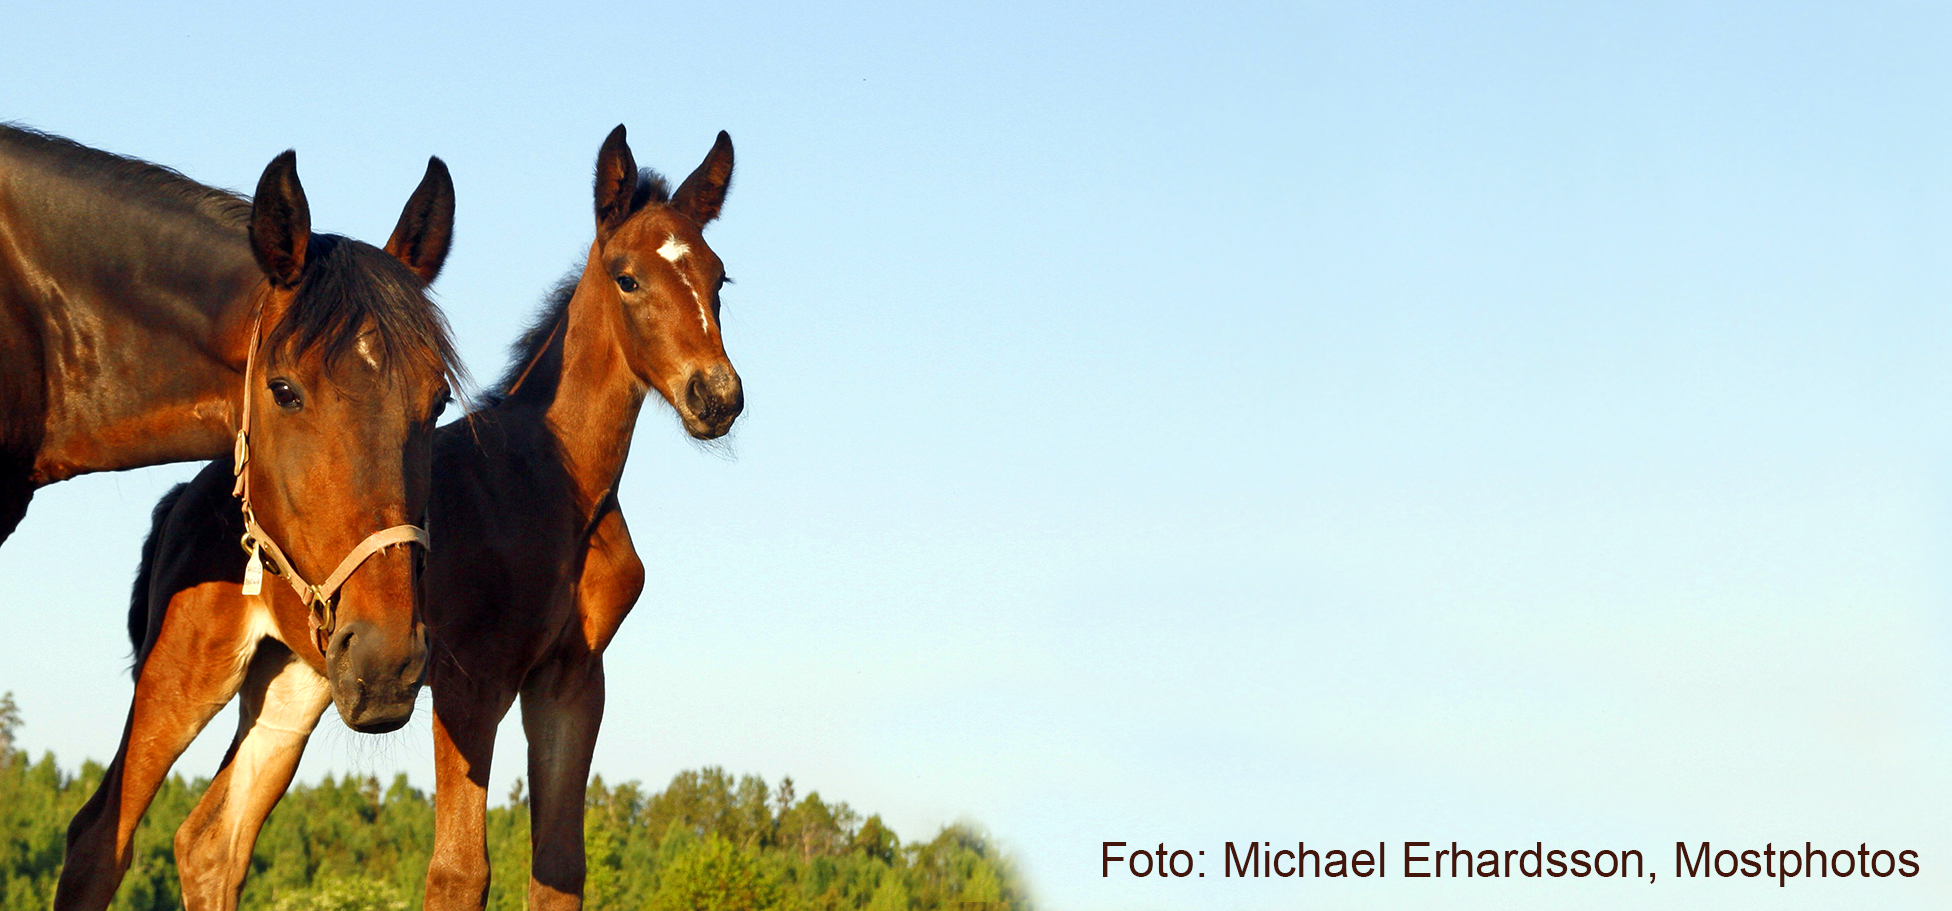 Två bruna hästar, ett sto med föl, tittar in i kameran. Blå himmel täcker bilden.